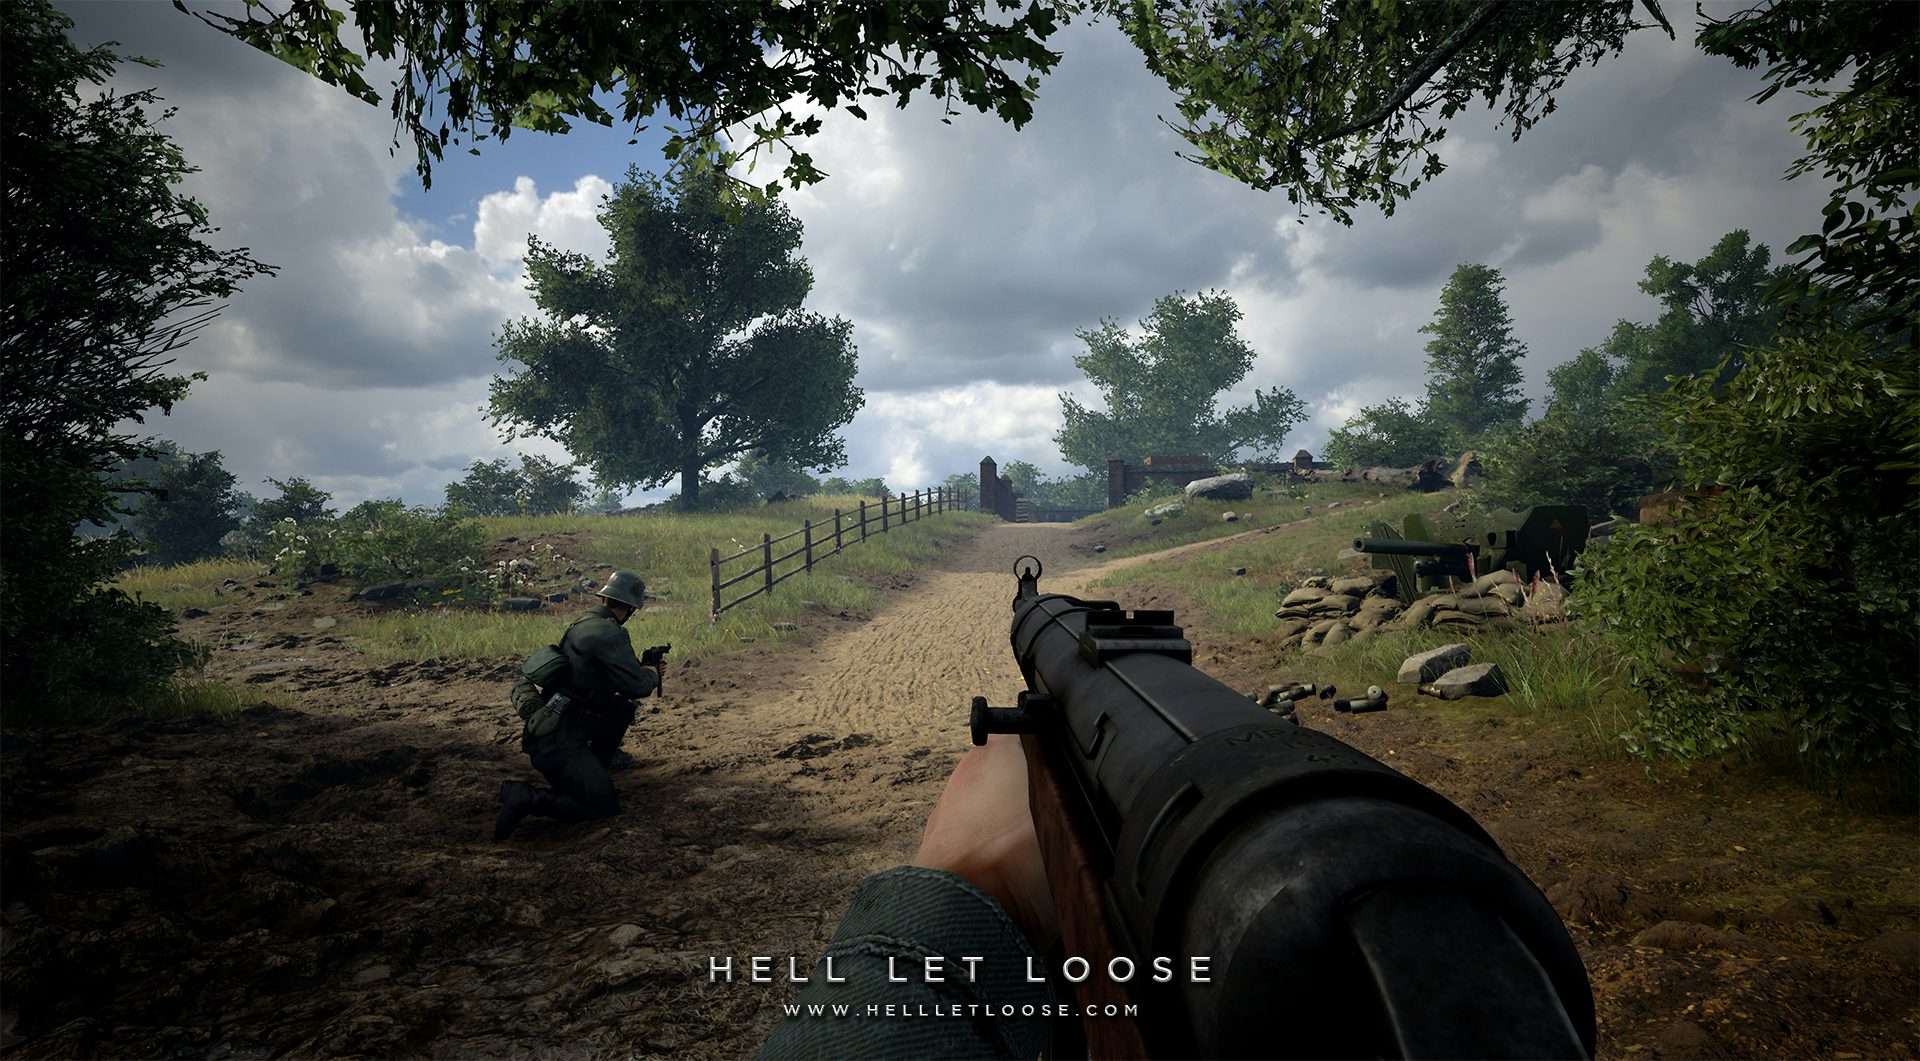 Project Reality: MOD de Battlefield que virou jogo promete guerra